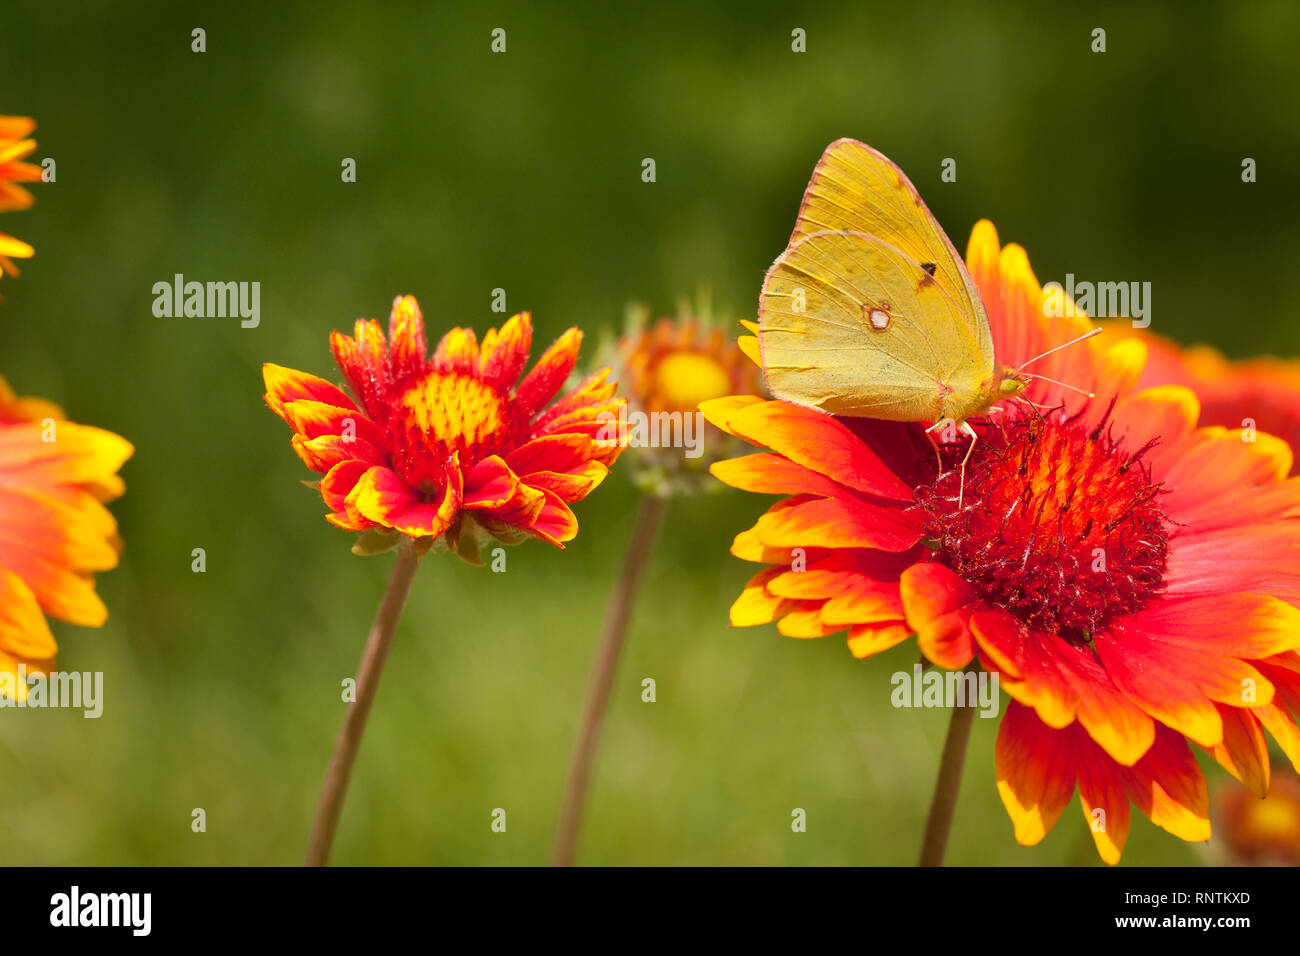 Makro Schmetterling Foto, Schmetterling auf orange Blume. Stockfoto